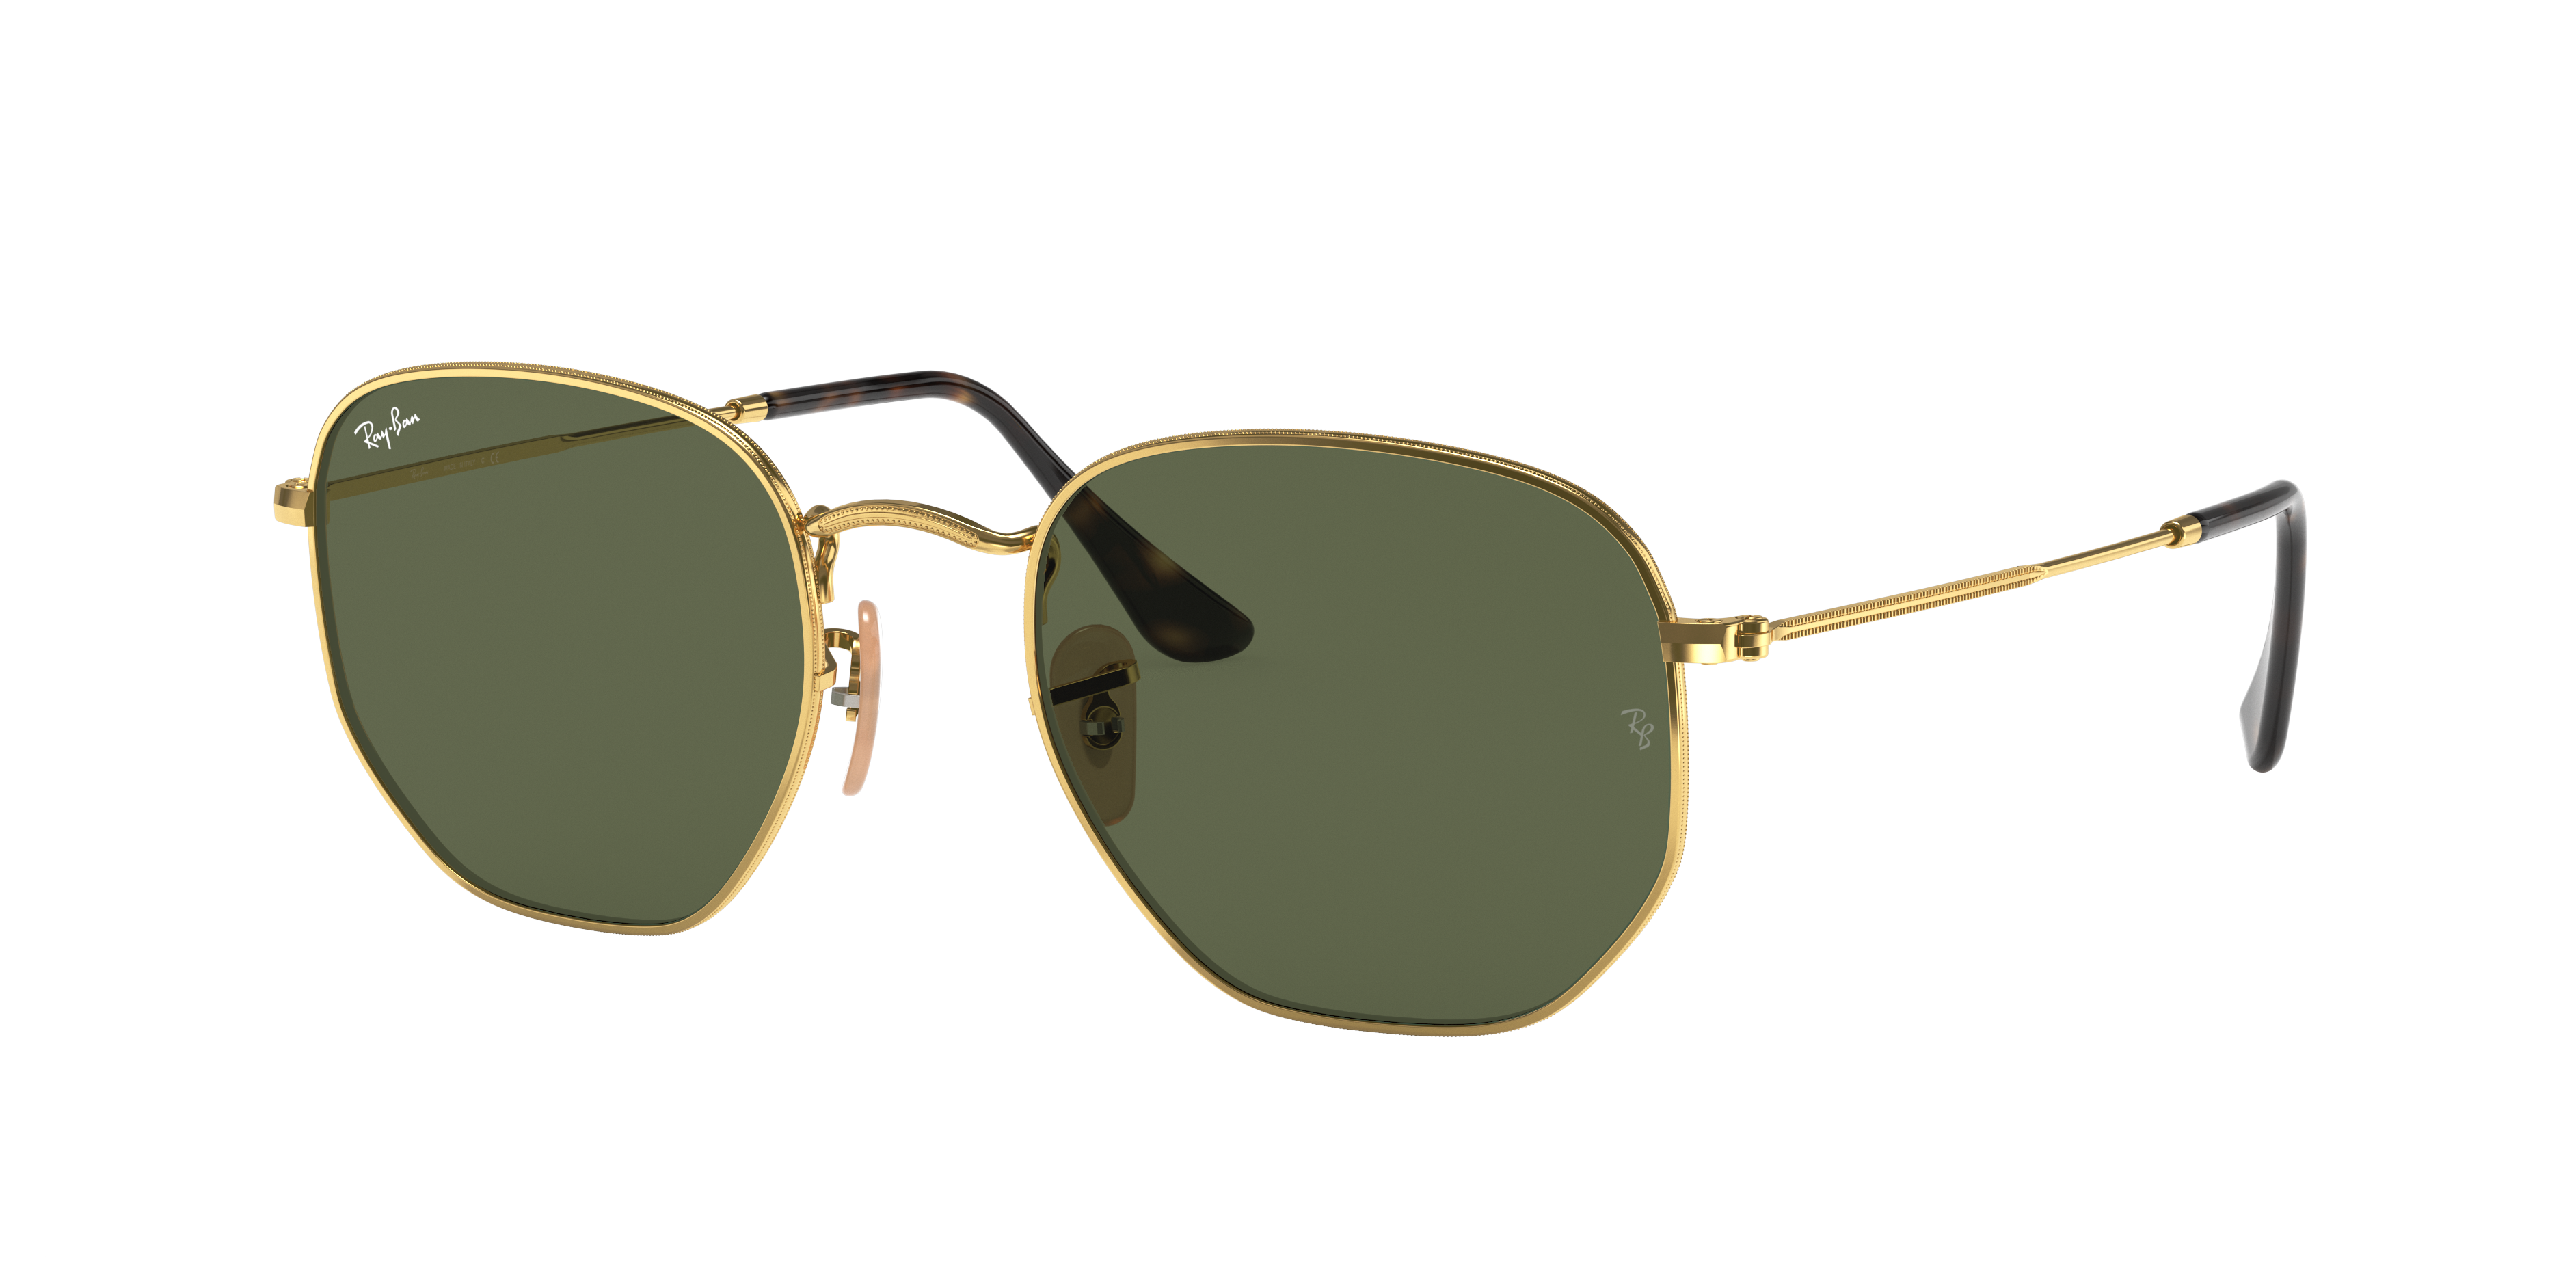 aanvaardbaar Airco maart Hexagonal Flat Lenses Sunglasses in Gold and Green | Ray-Ban®